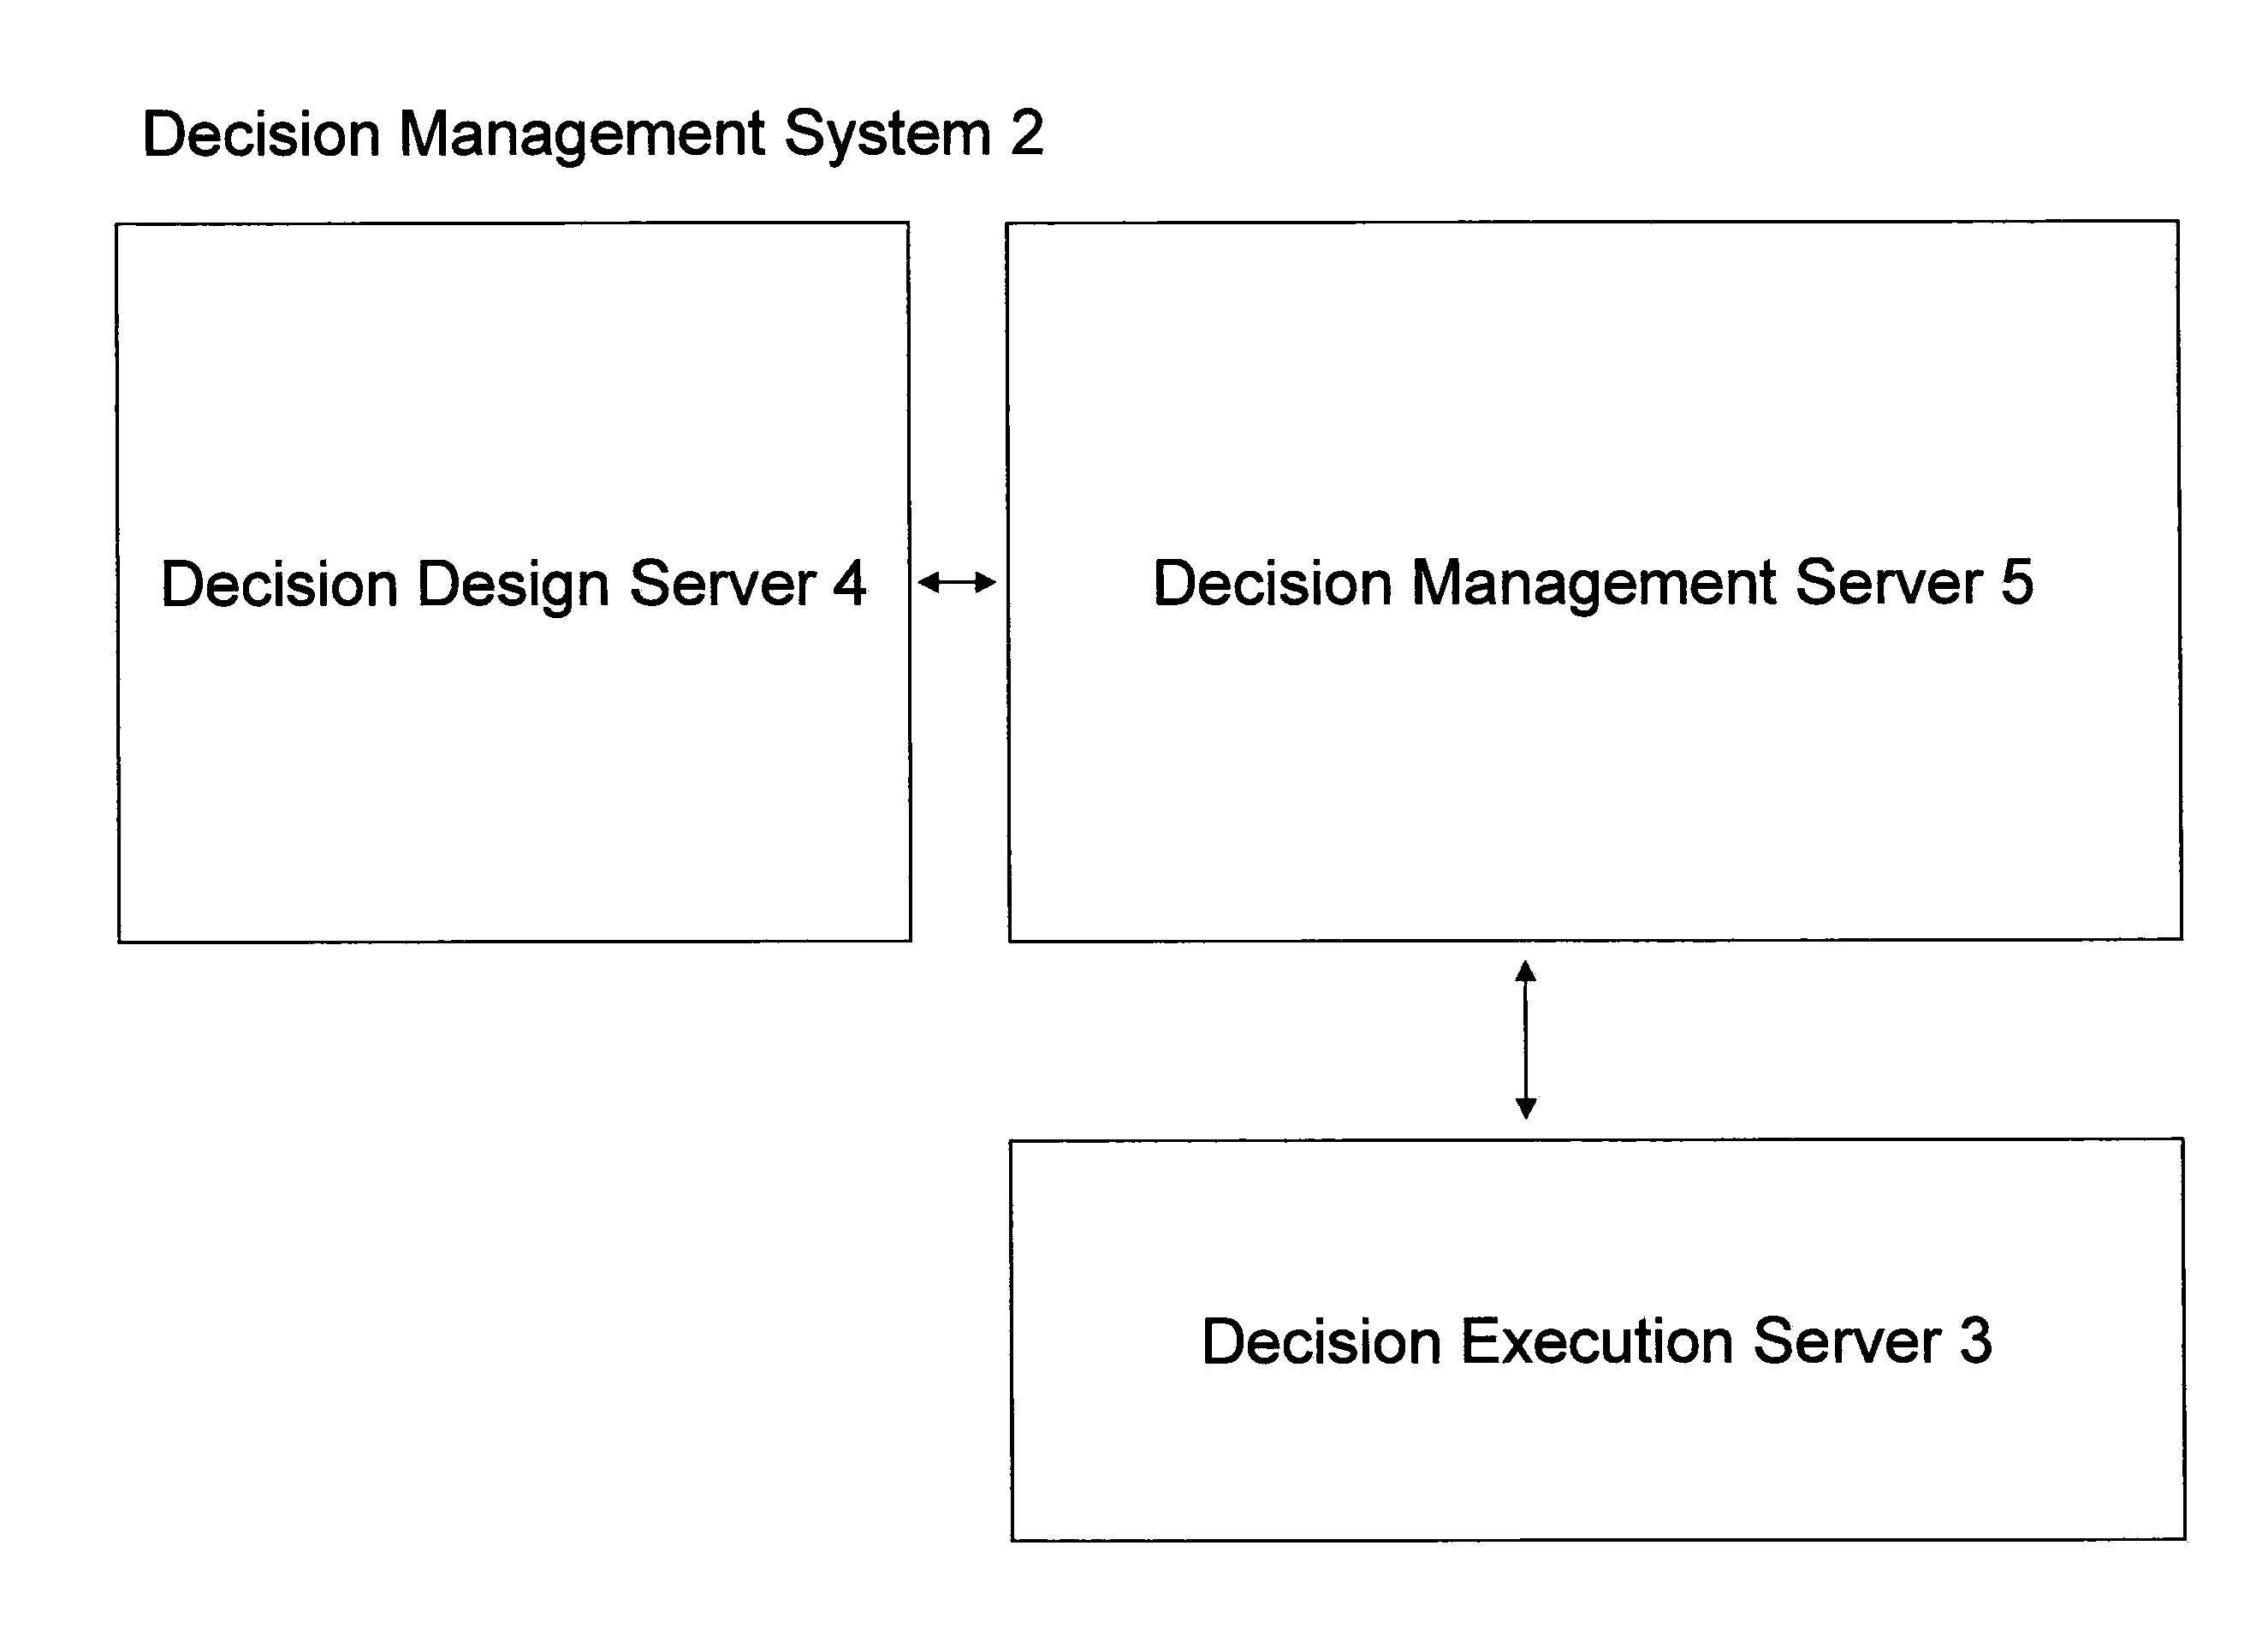 Enterprise decision management